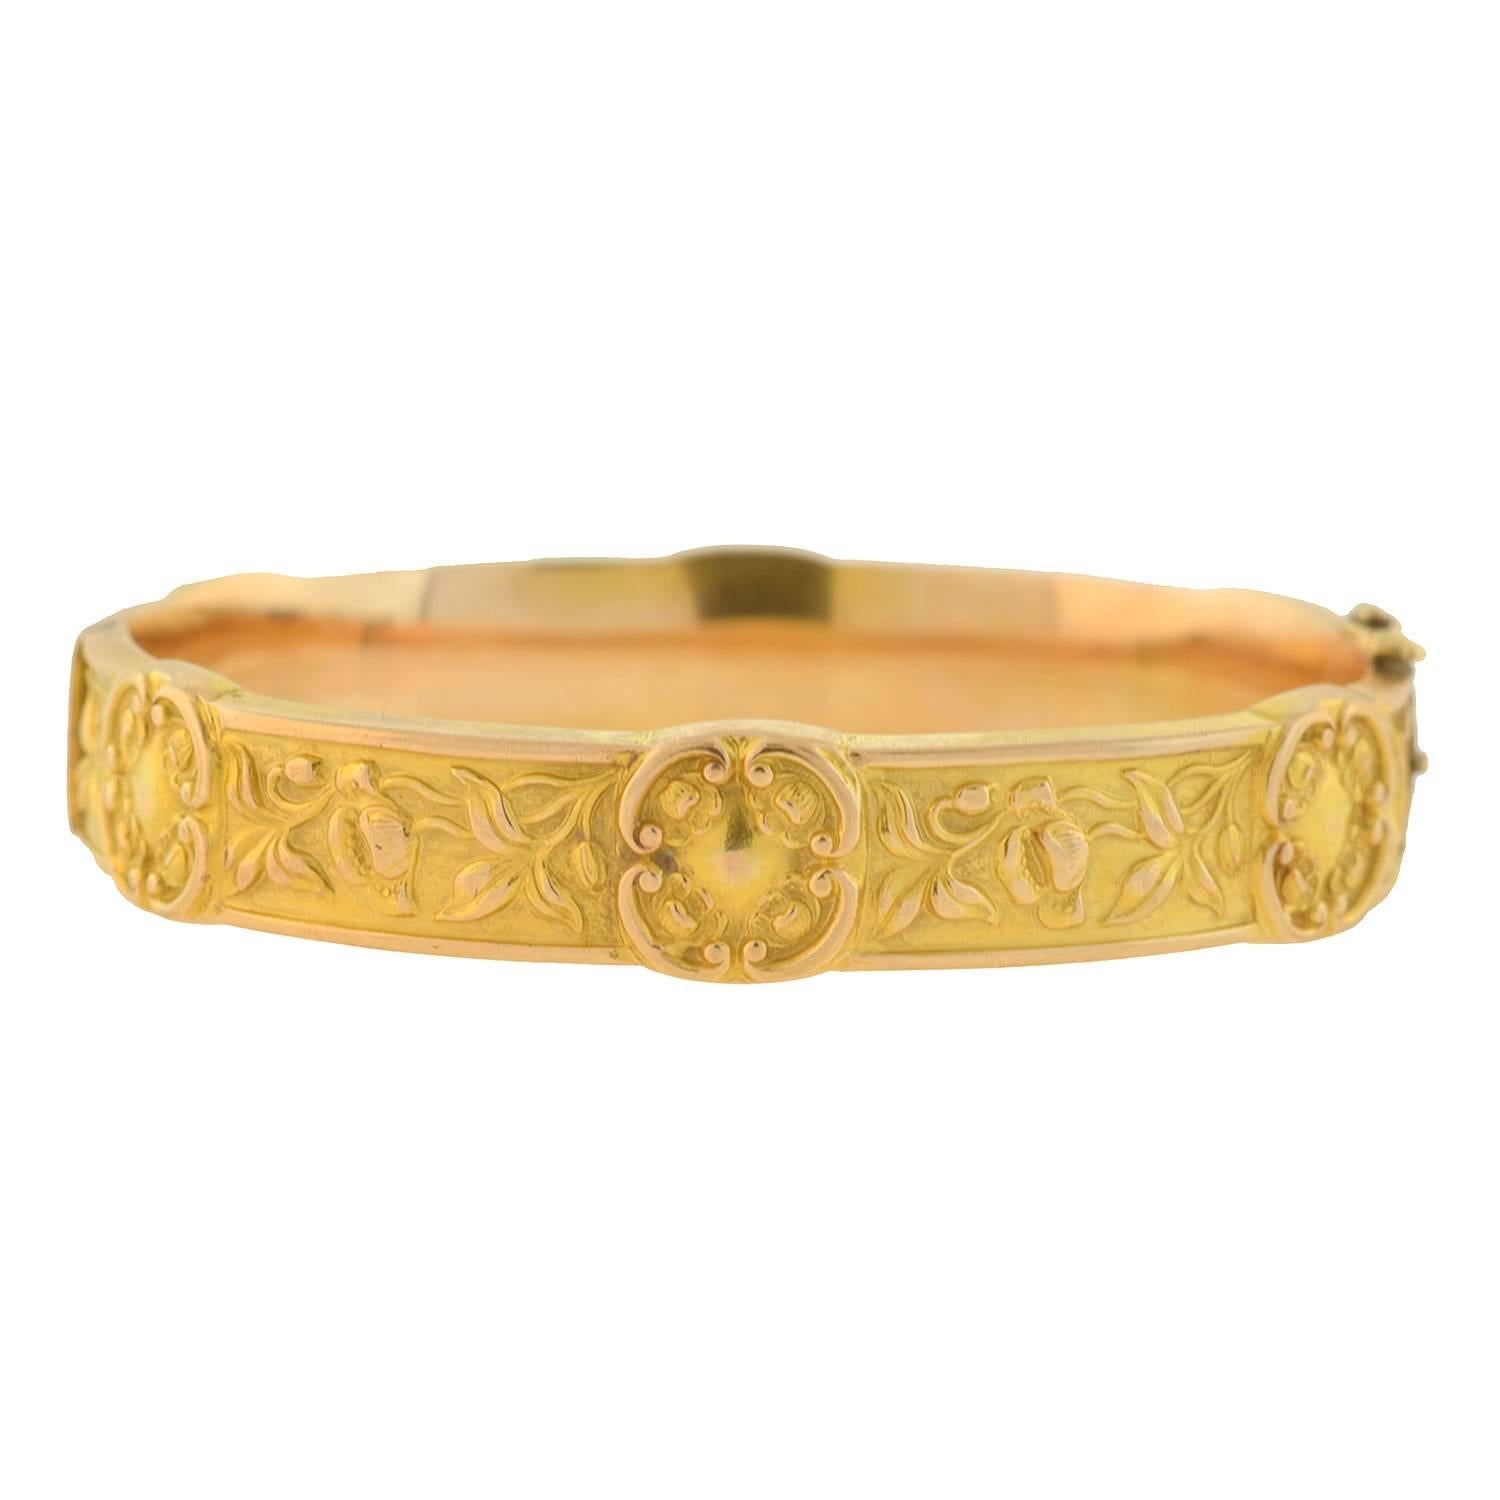 Art Nouveau Gold Repousse Bangle Bracelet With Floral Motif